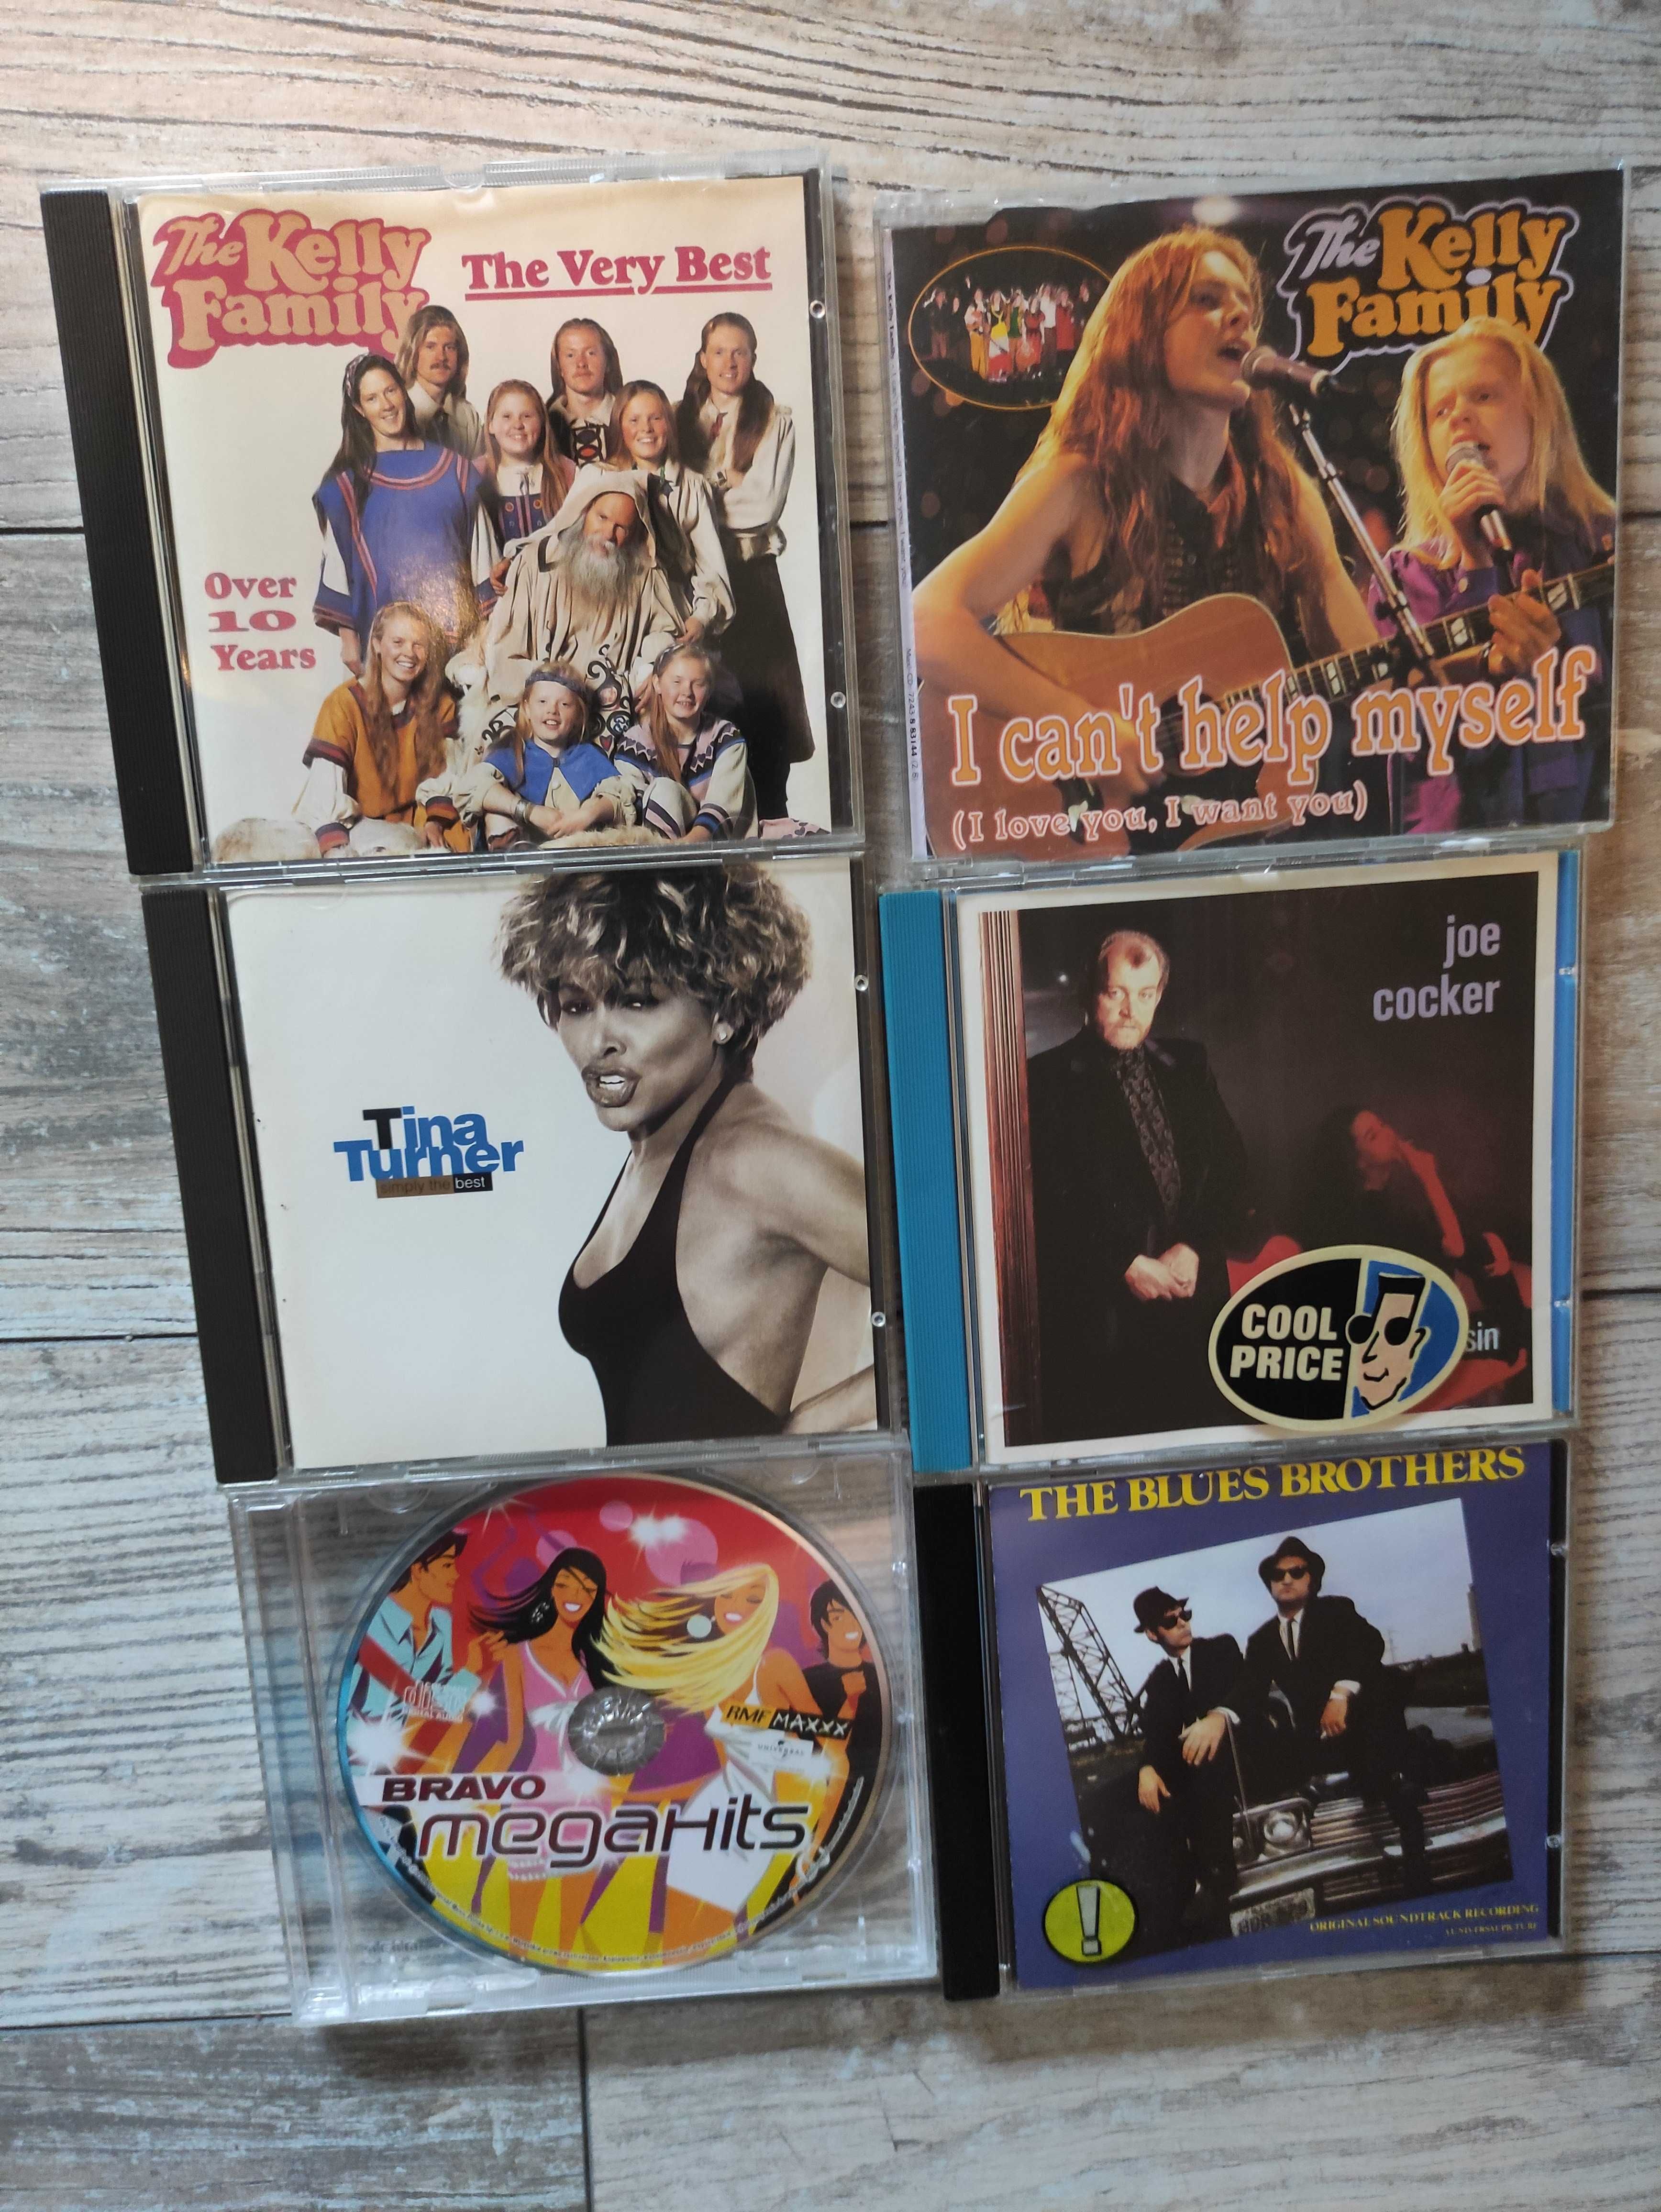 CD: The Kelly Family / Tina Turner / Joe Cocker / The Blues Brothers